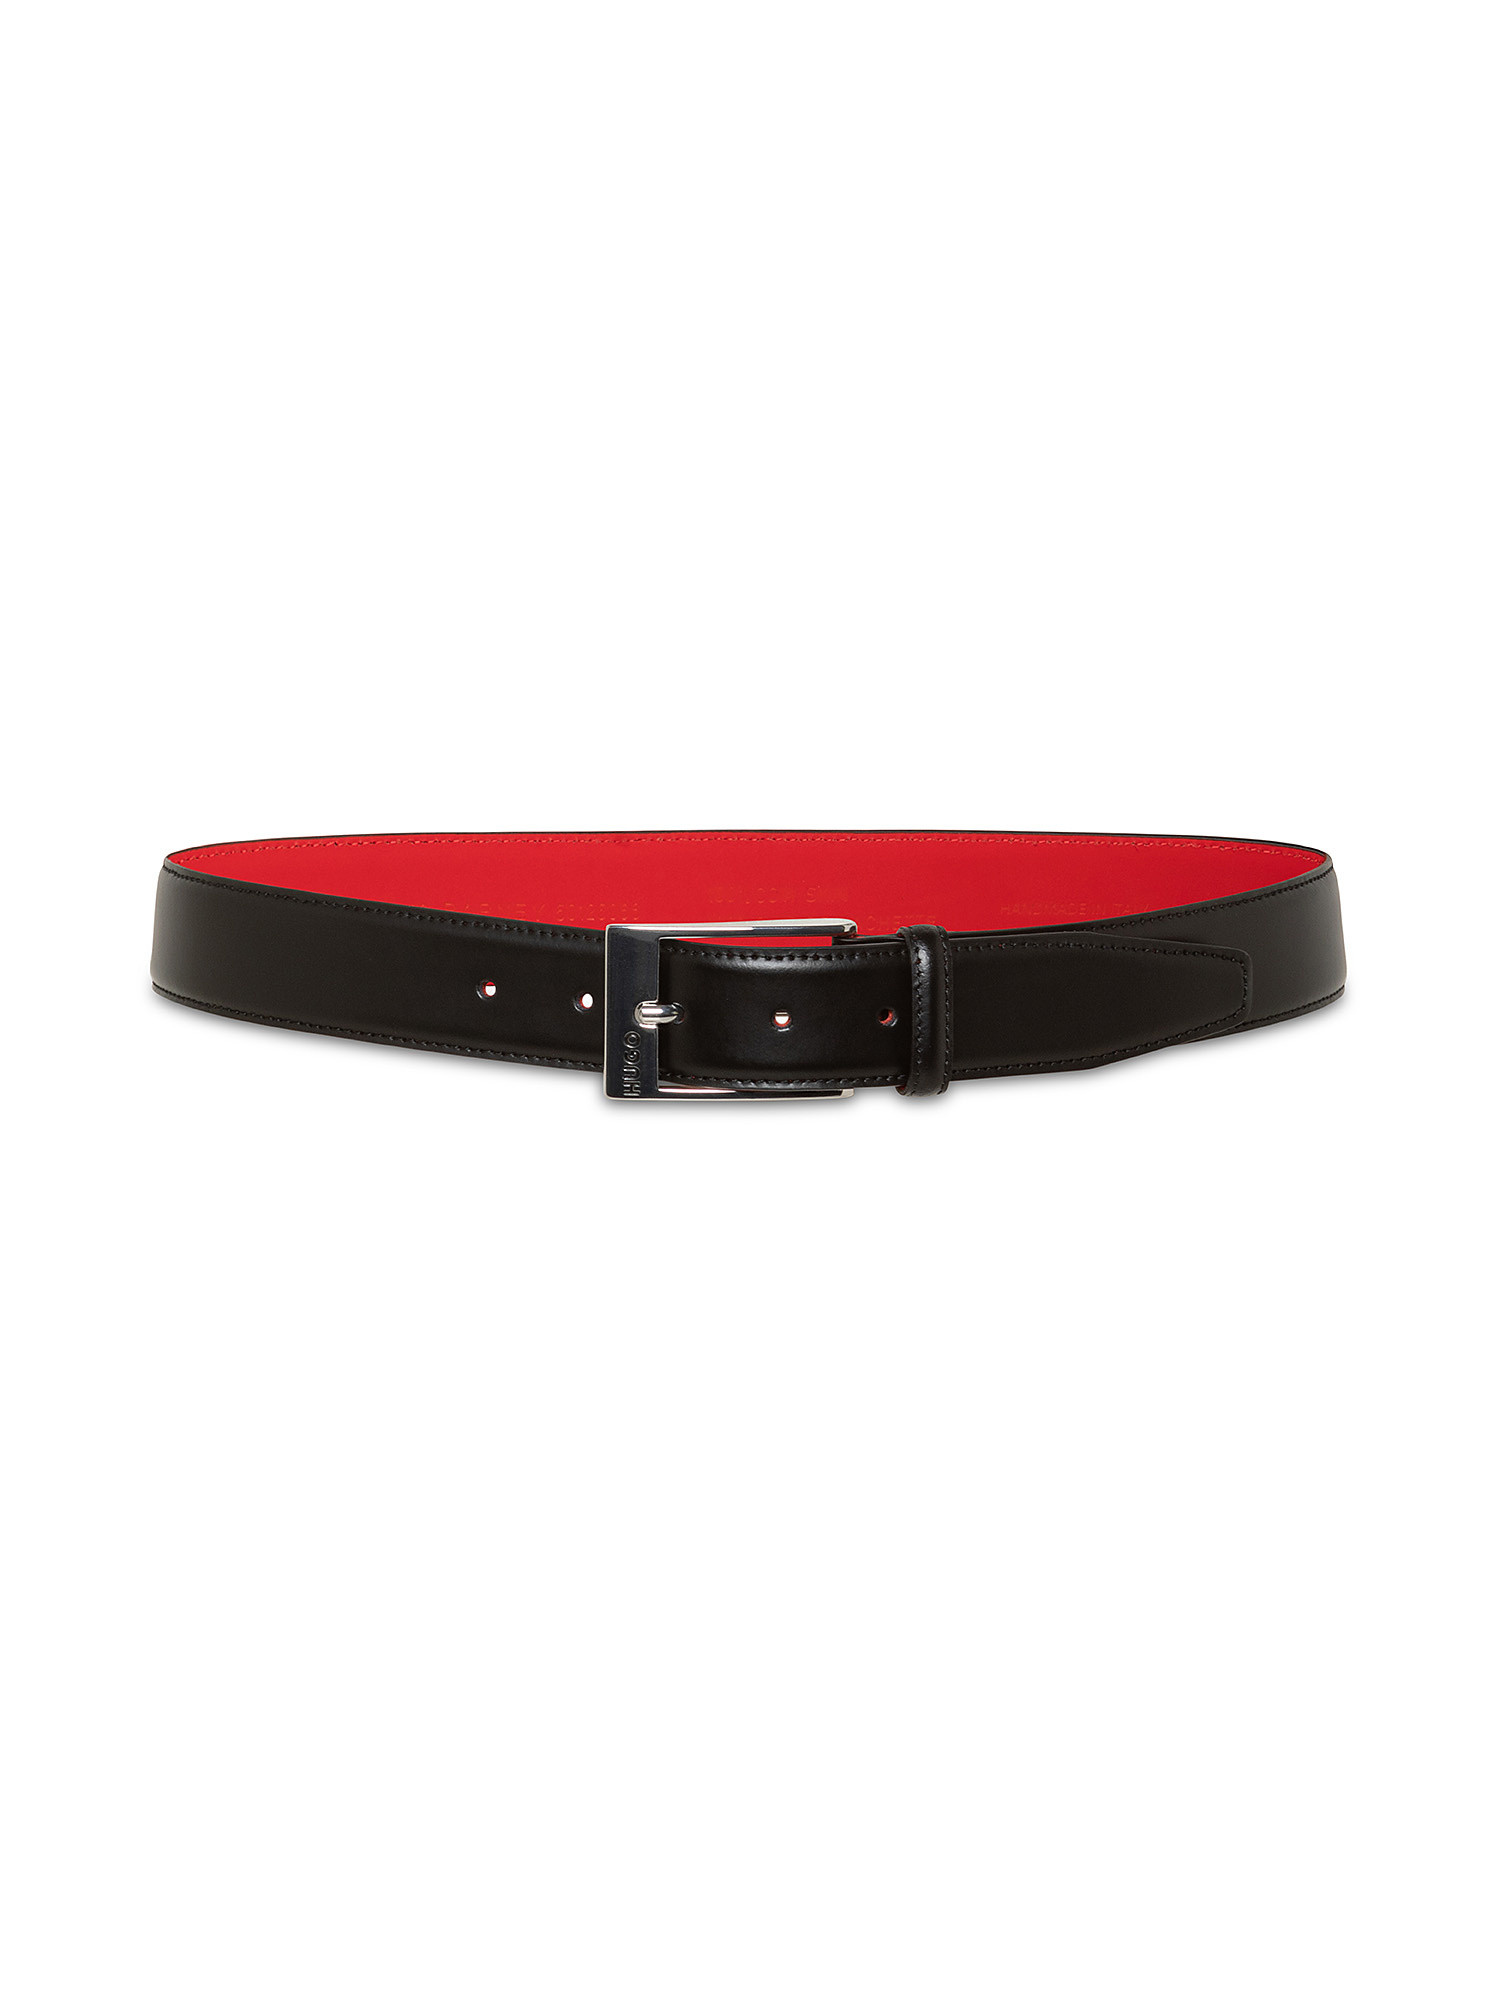 Hugo - Leather belt, Black, large image number 1